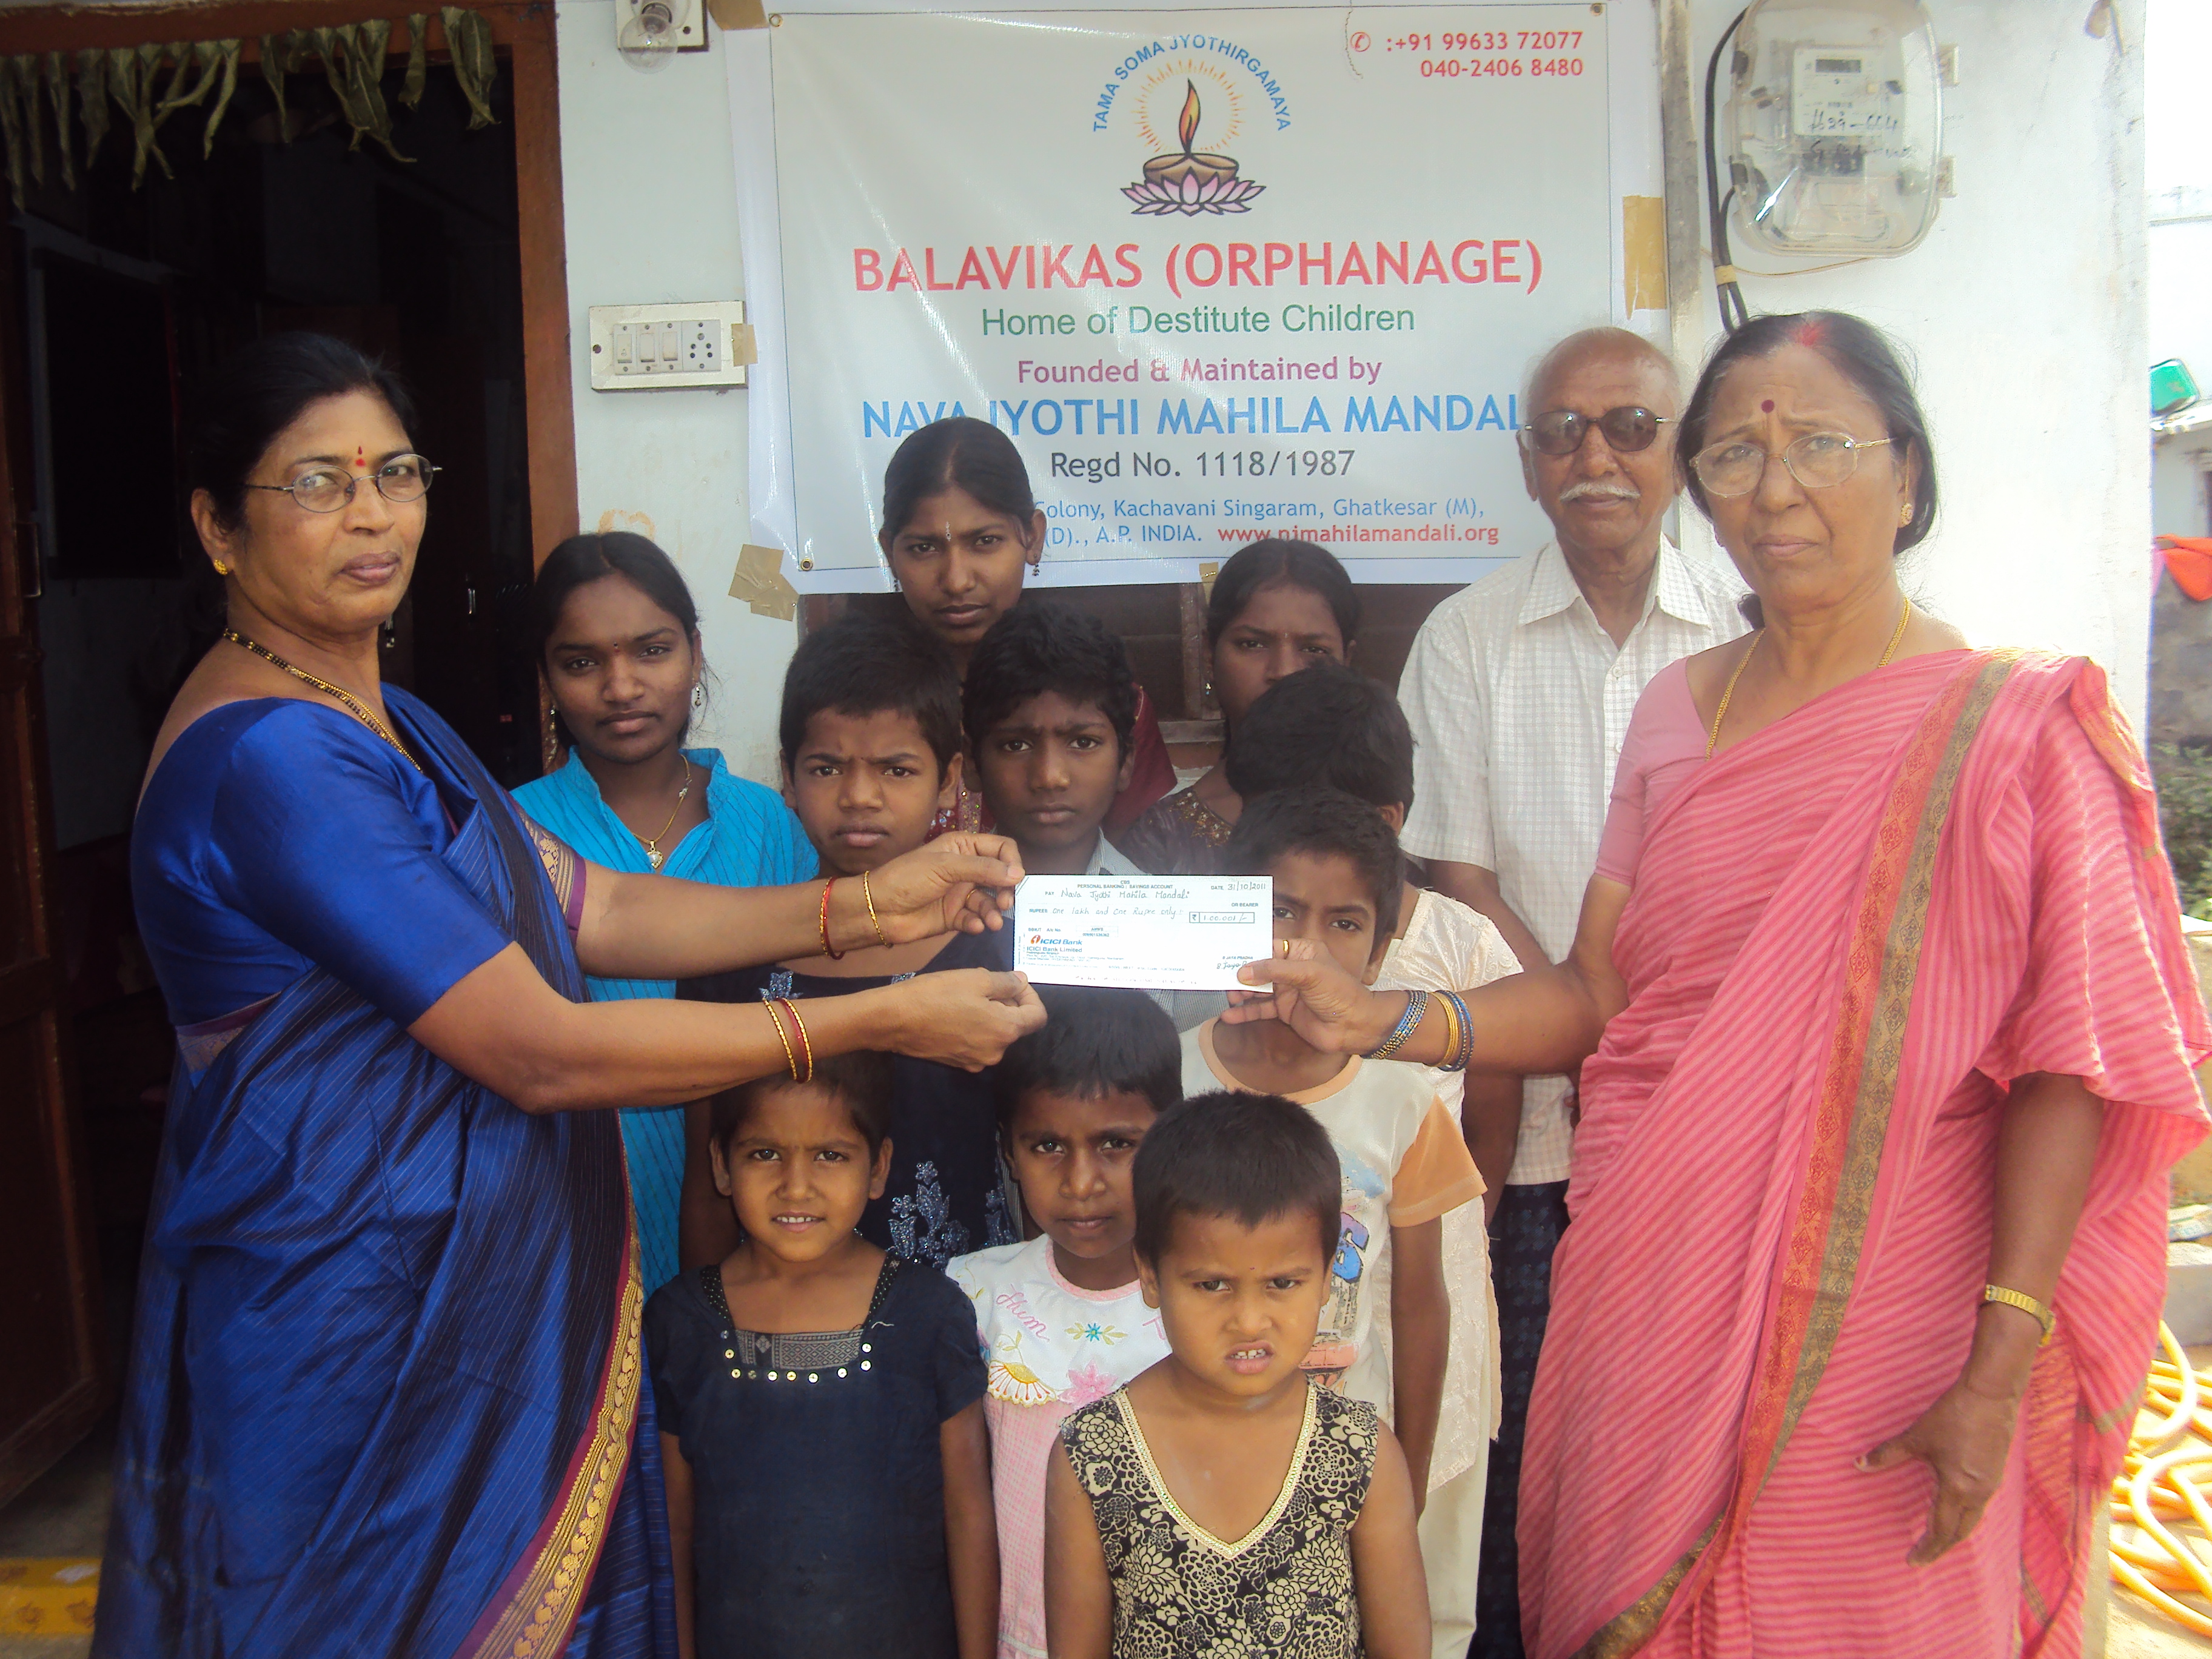 Nava Jyothi Mahila Mandali - Balavikas Orphanage - Donation